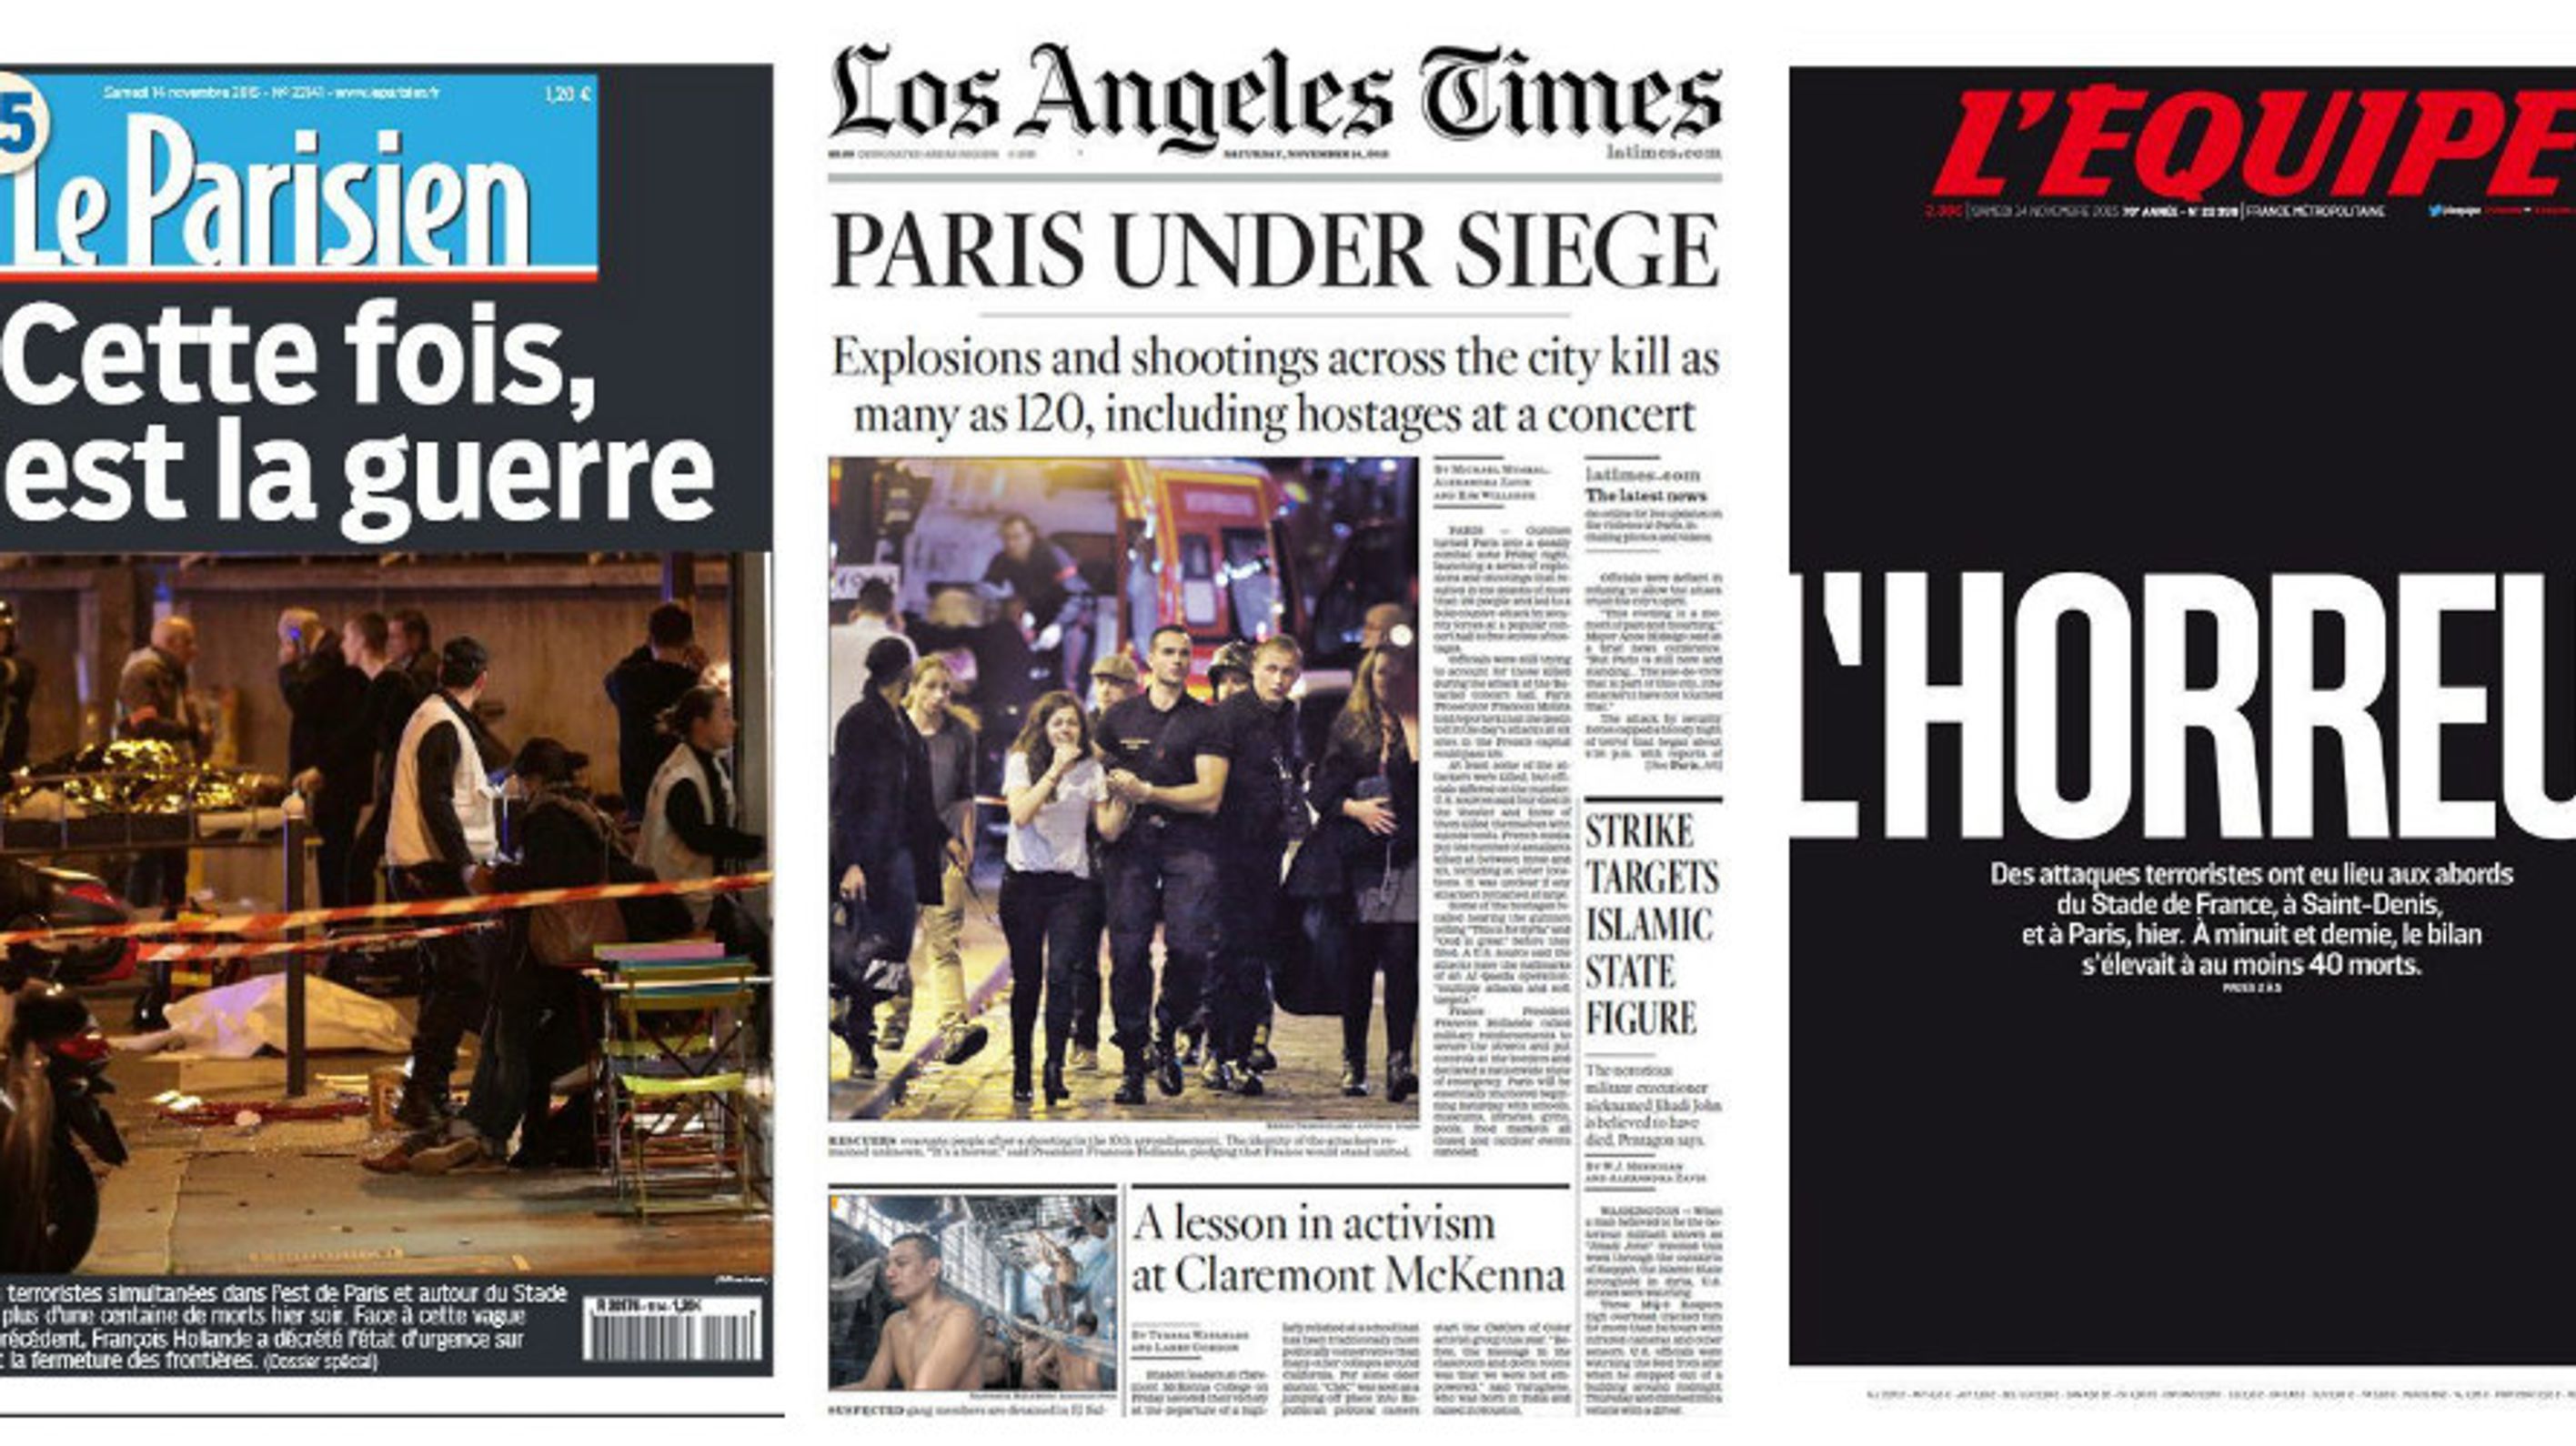 Attentats à Paris Lhorreur En Une De La Presse Du Monde Entier